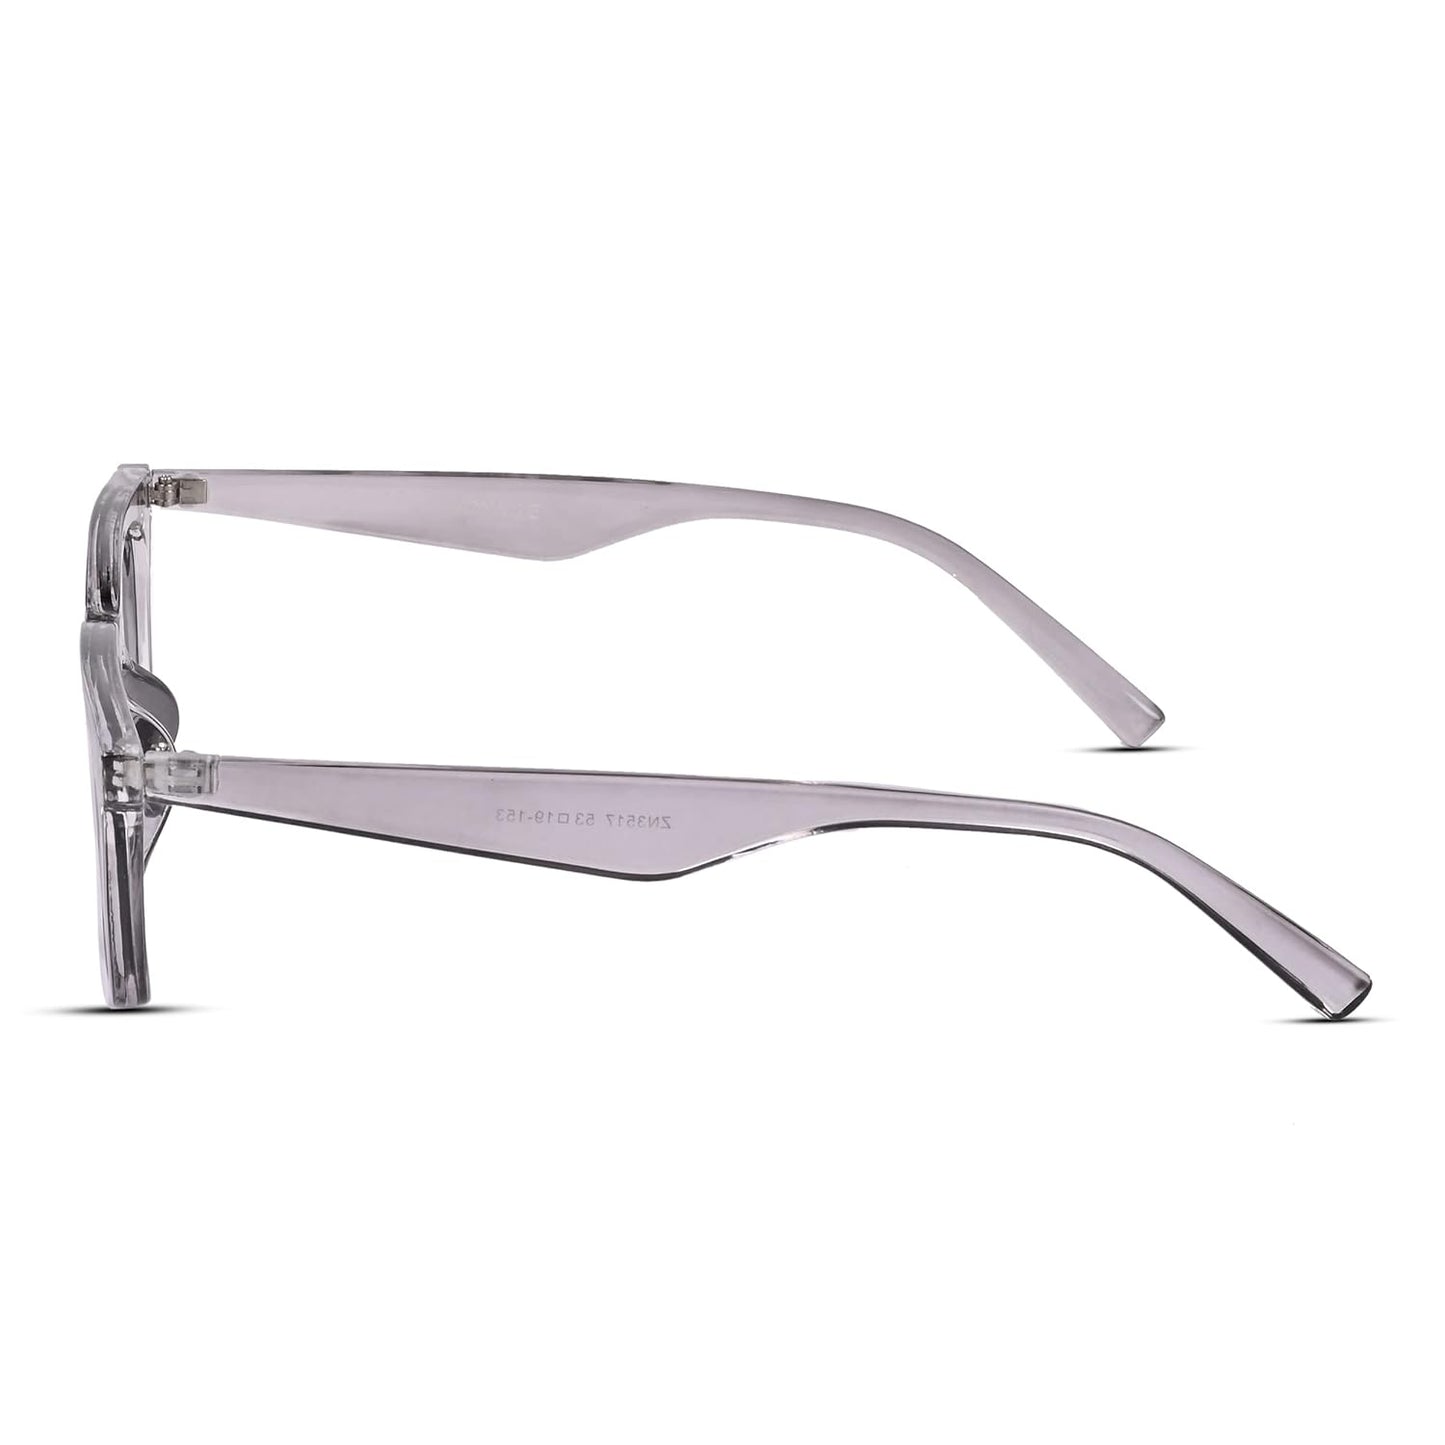 Voyage UV Protection Black Cat-Eye Sunglasses for Women (Grey Frame | Black Lens)